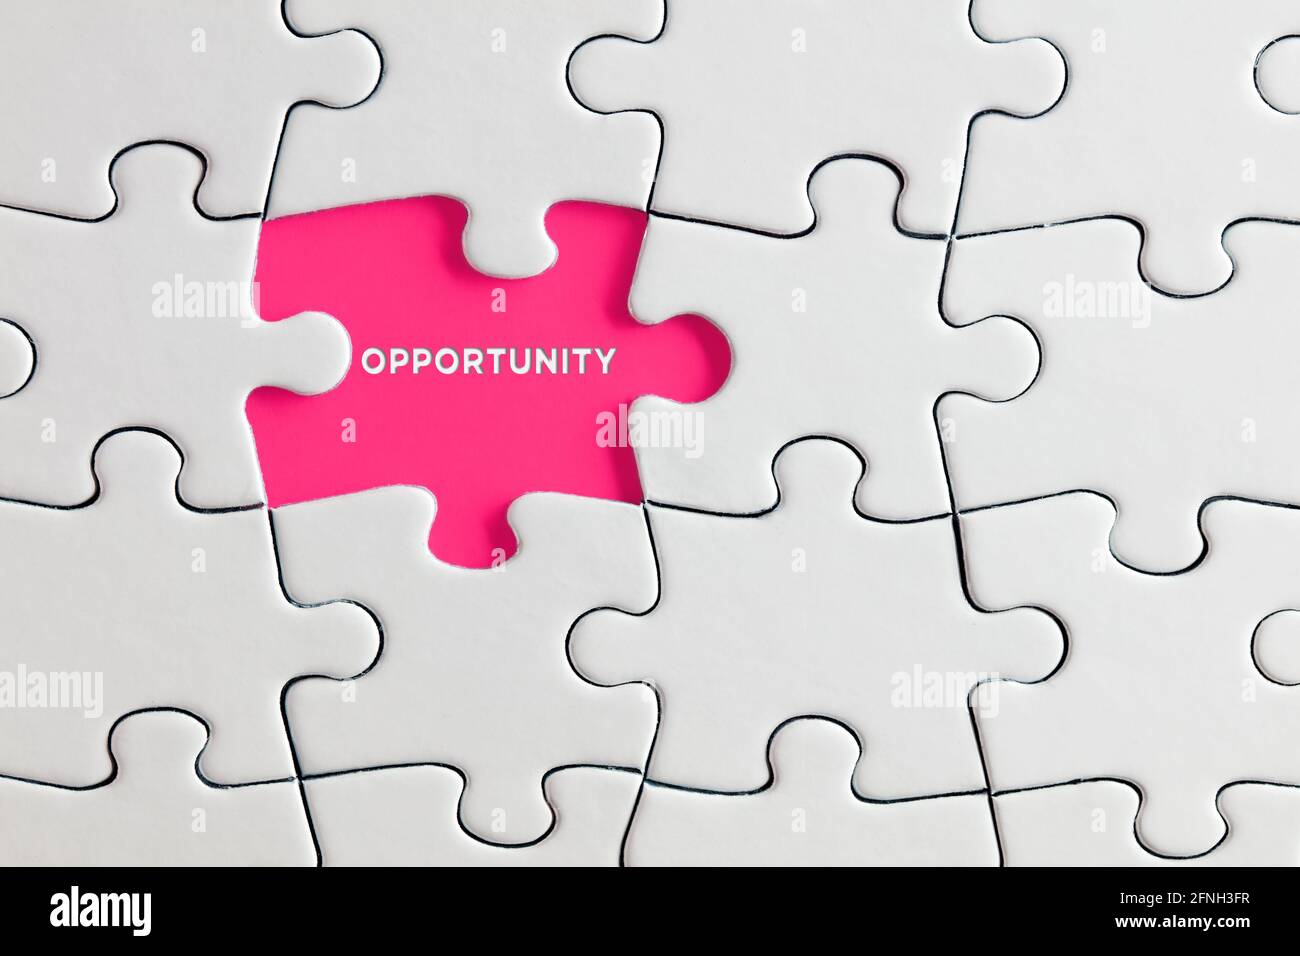 La palabra oportunidad escrita en rosa falta pieza de rompecabezas. Nuevo concepto de aperturas y posibilidades. Foto de stock